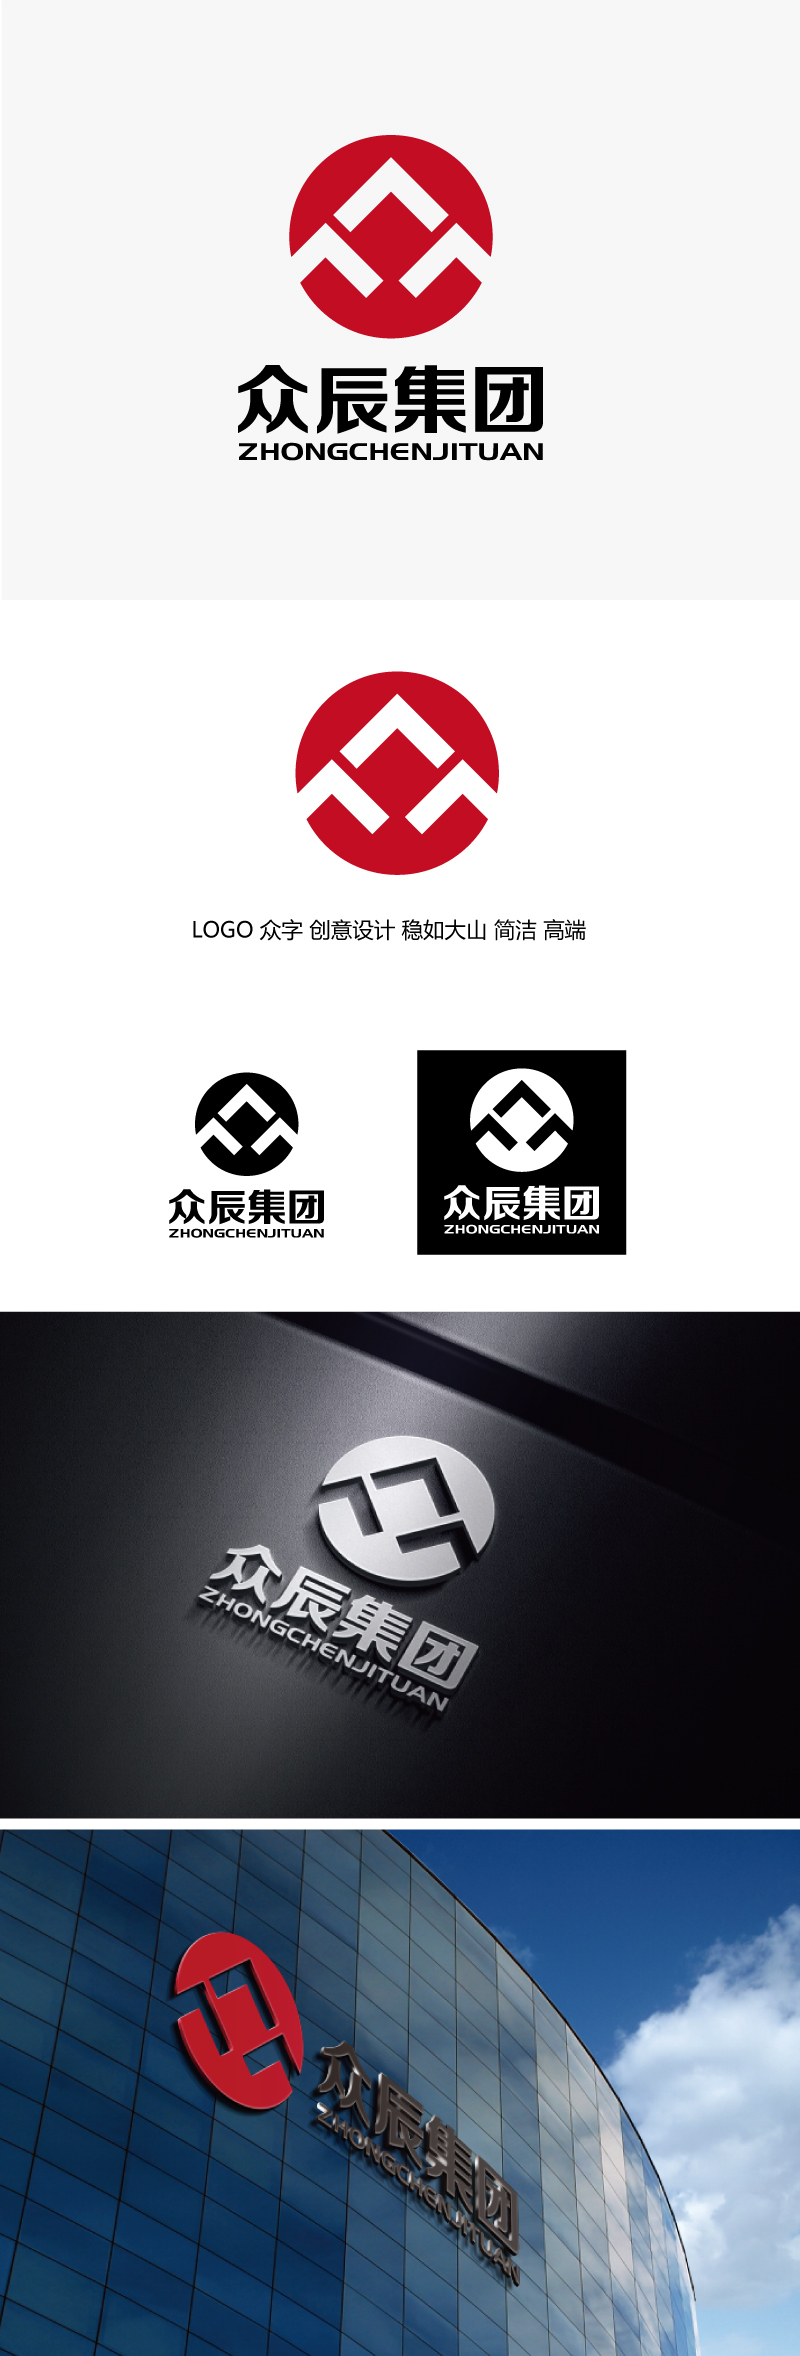 张俊的众辰集团logo设计